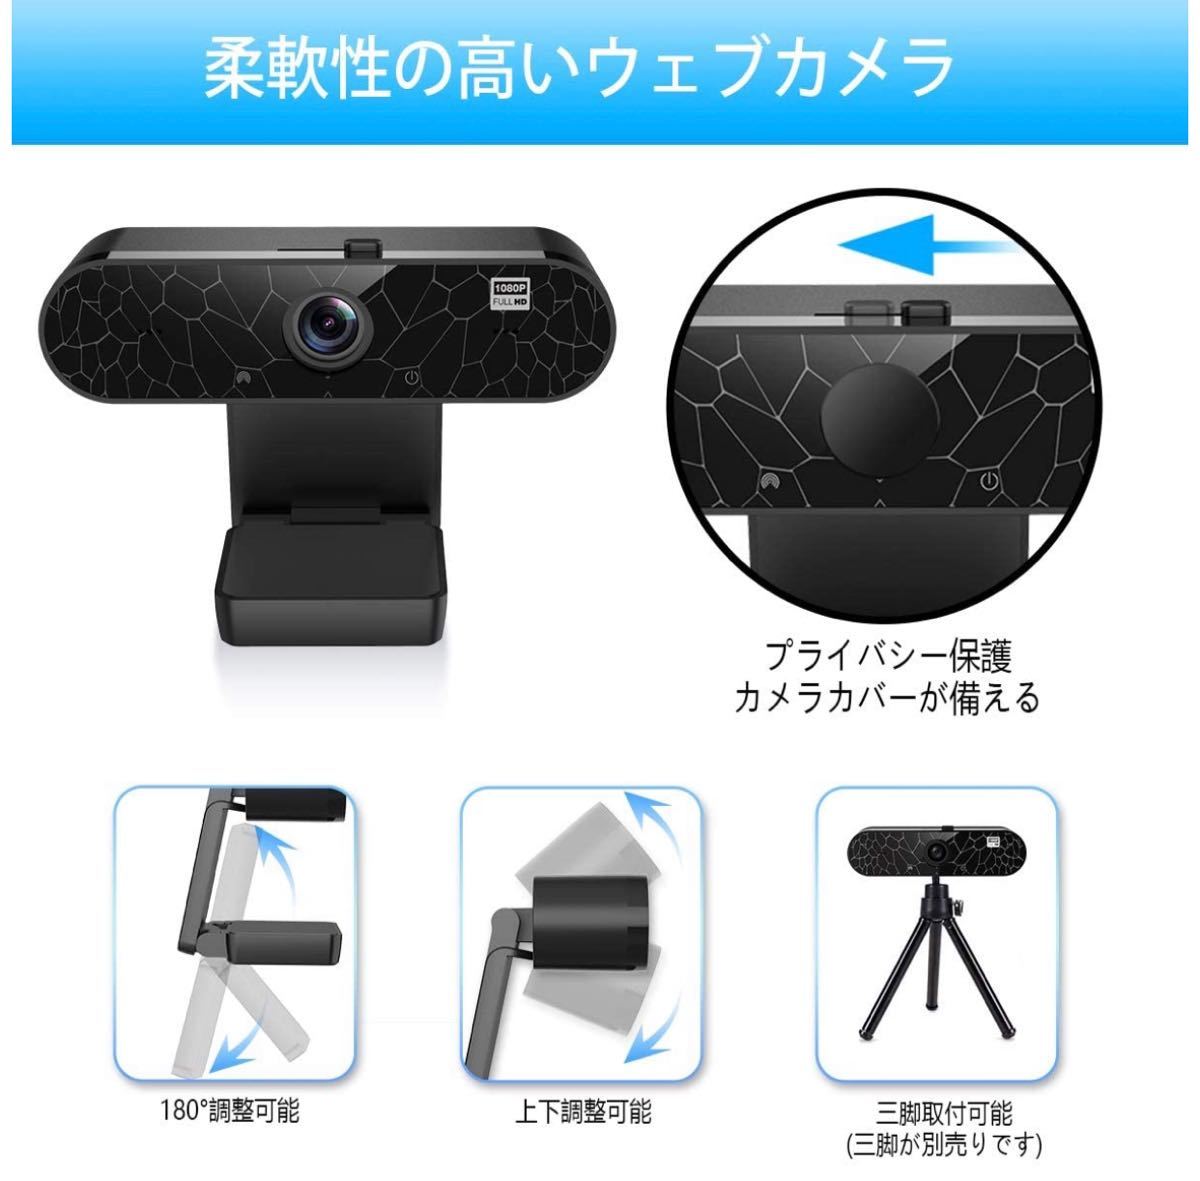 WEBカメラ ウェブカメラ フルHD 1080P マイク内蔵 自動フォーカス